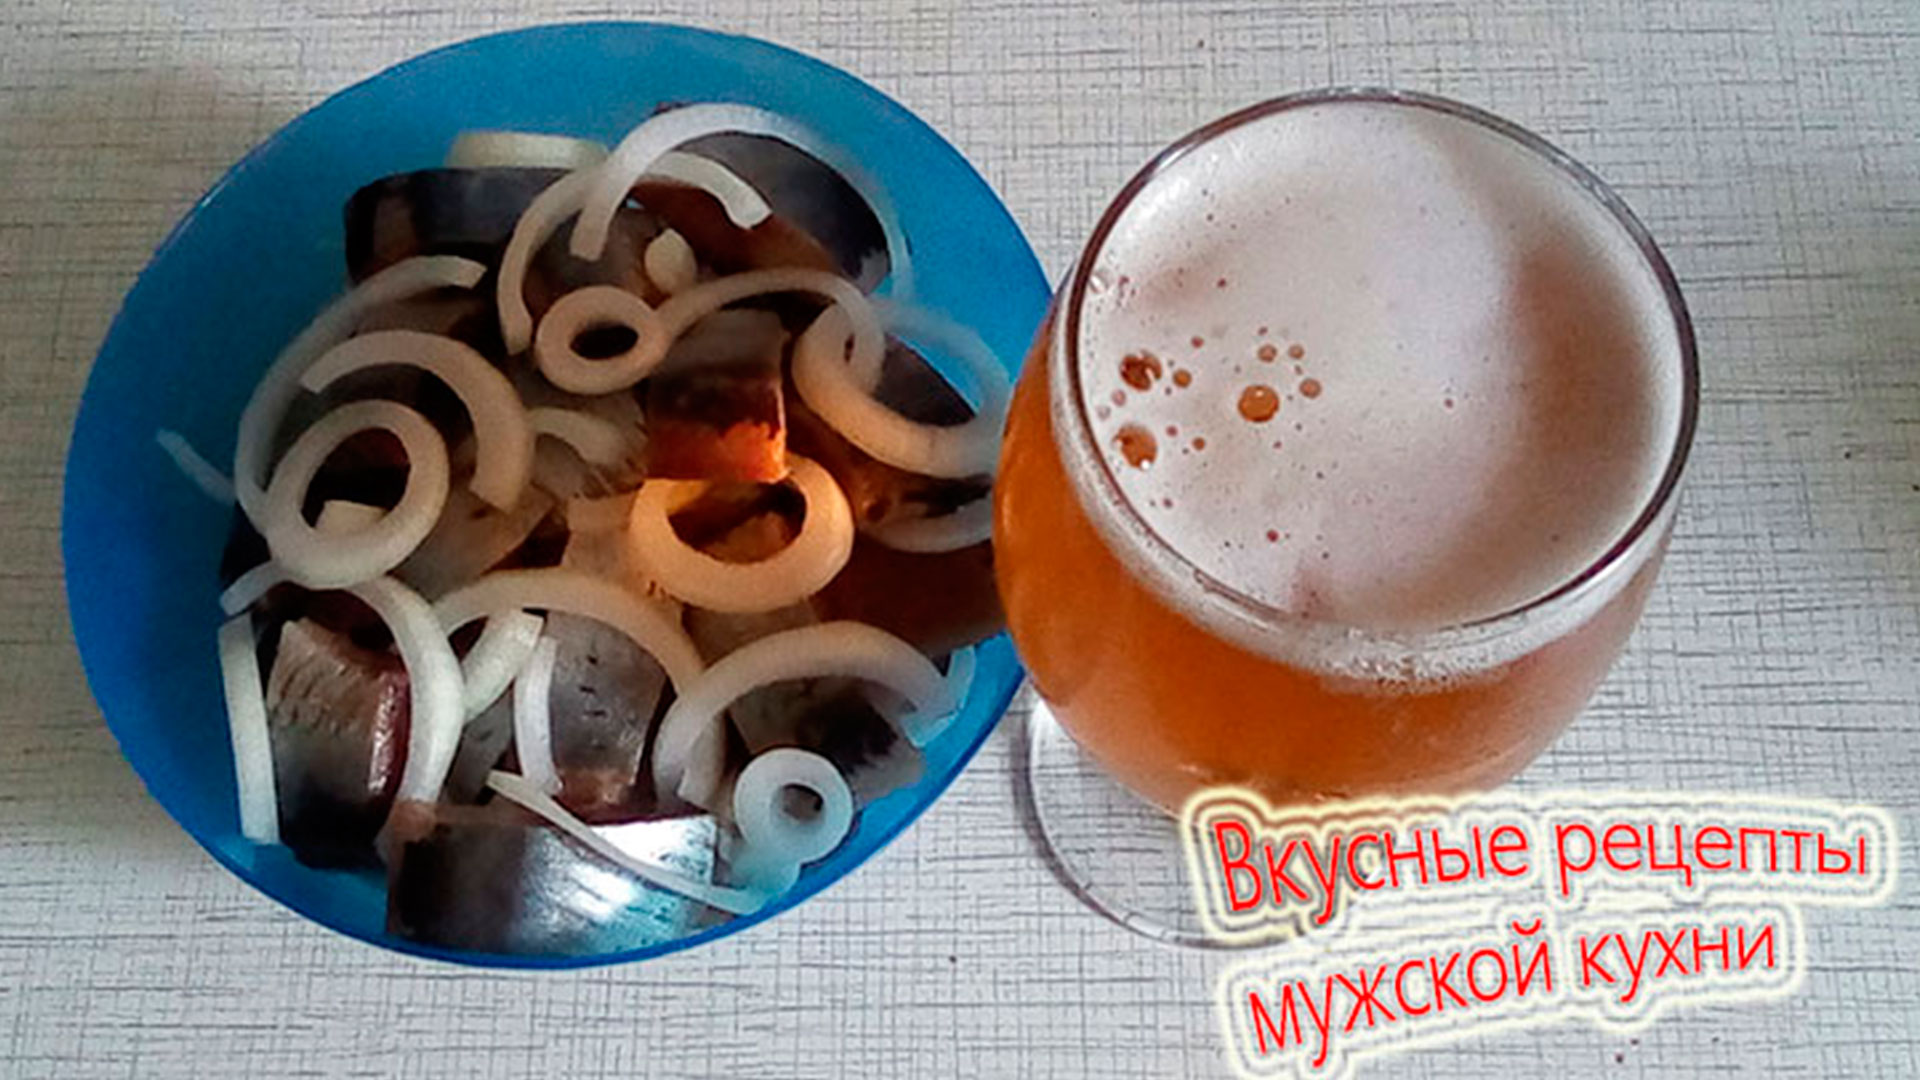 Мужской рецепт – селедочка с луком и бокал пива.